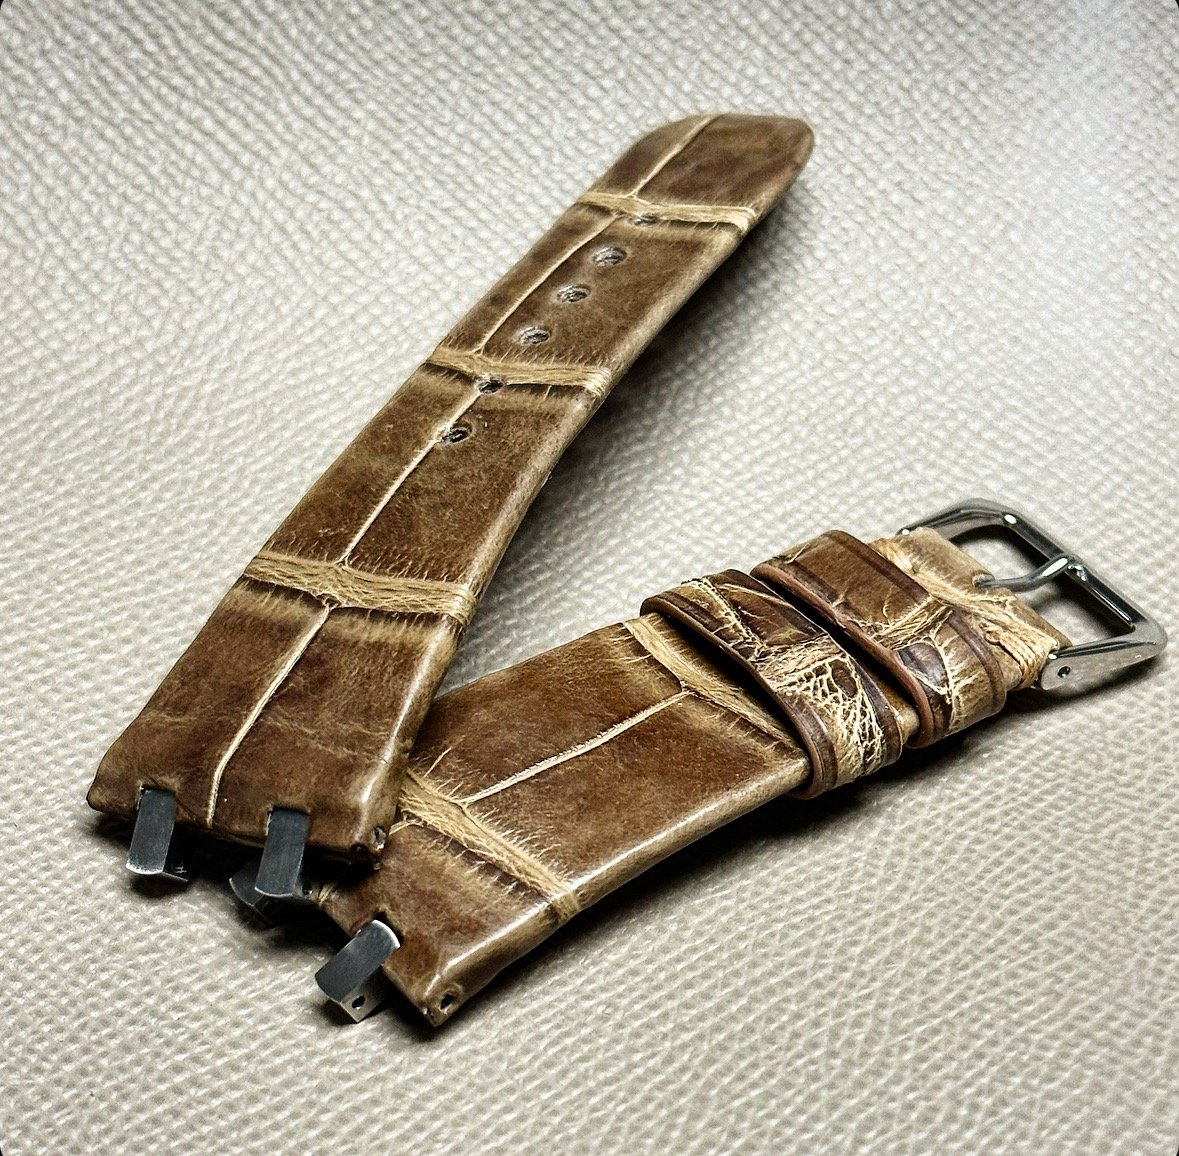 Image of Vintage Tobacco Alligator Hand-rolled AP Royal Oak Watch Strap